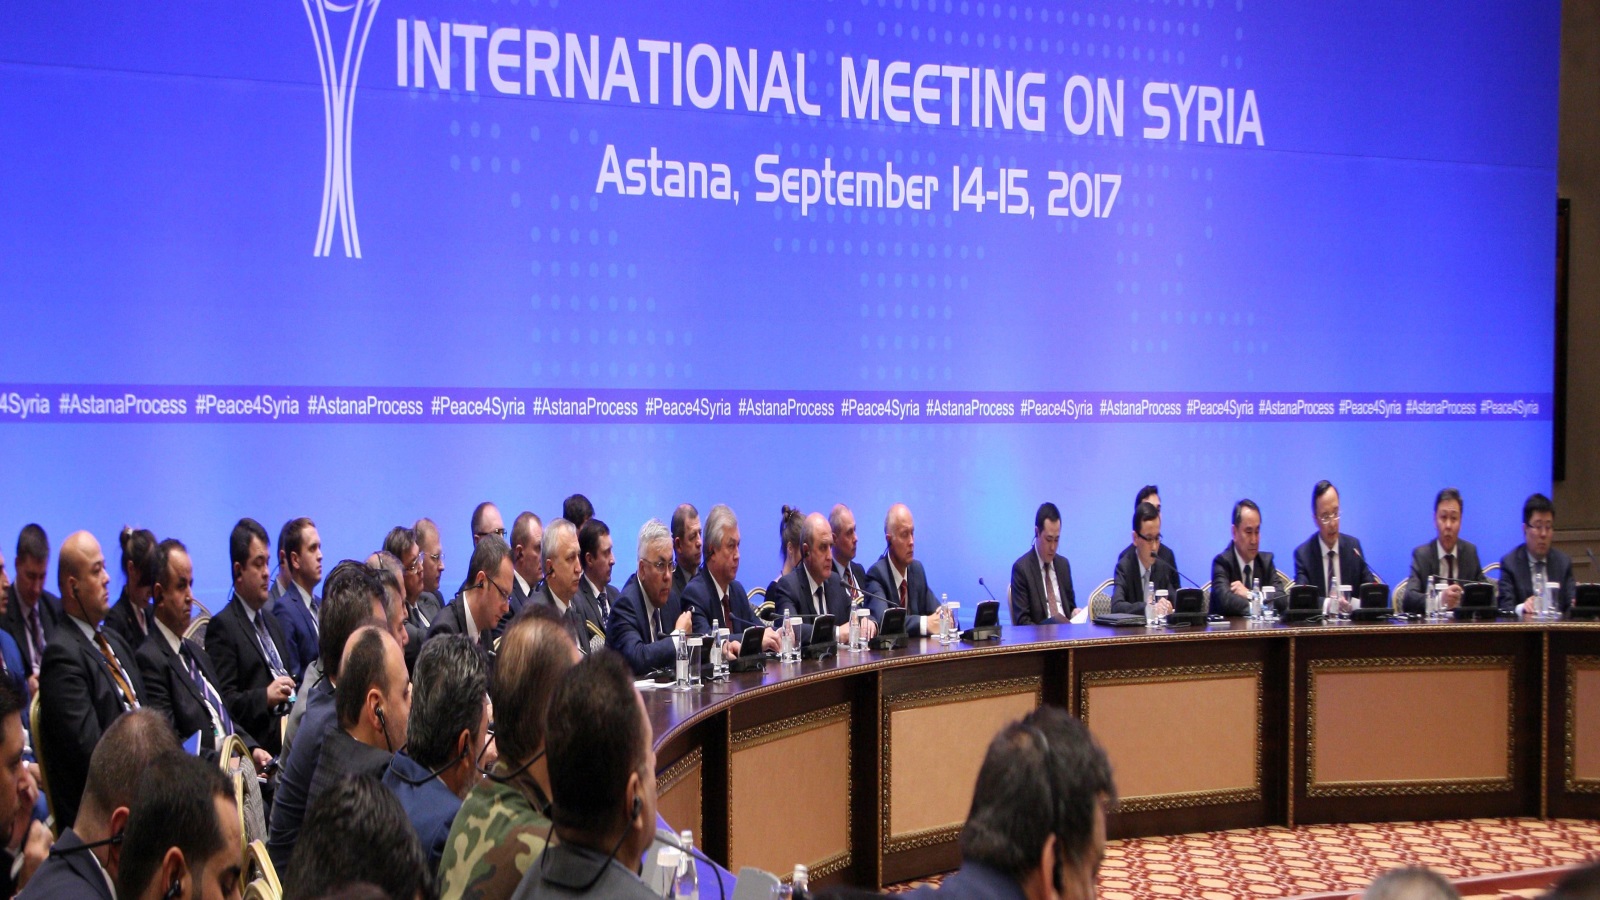 التفاهمات الروسية - التركية - الإيرانية التي تجلت في مخرجات مؤتمر أستانا-٦ قد جعلت من تقسيم الأراضي السورية لمناطق نفوذ واقعاً لا مفر منه